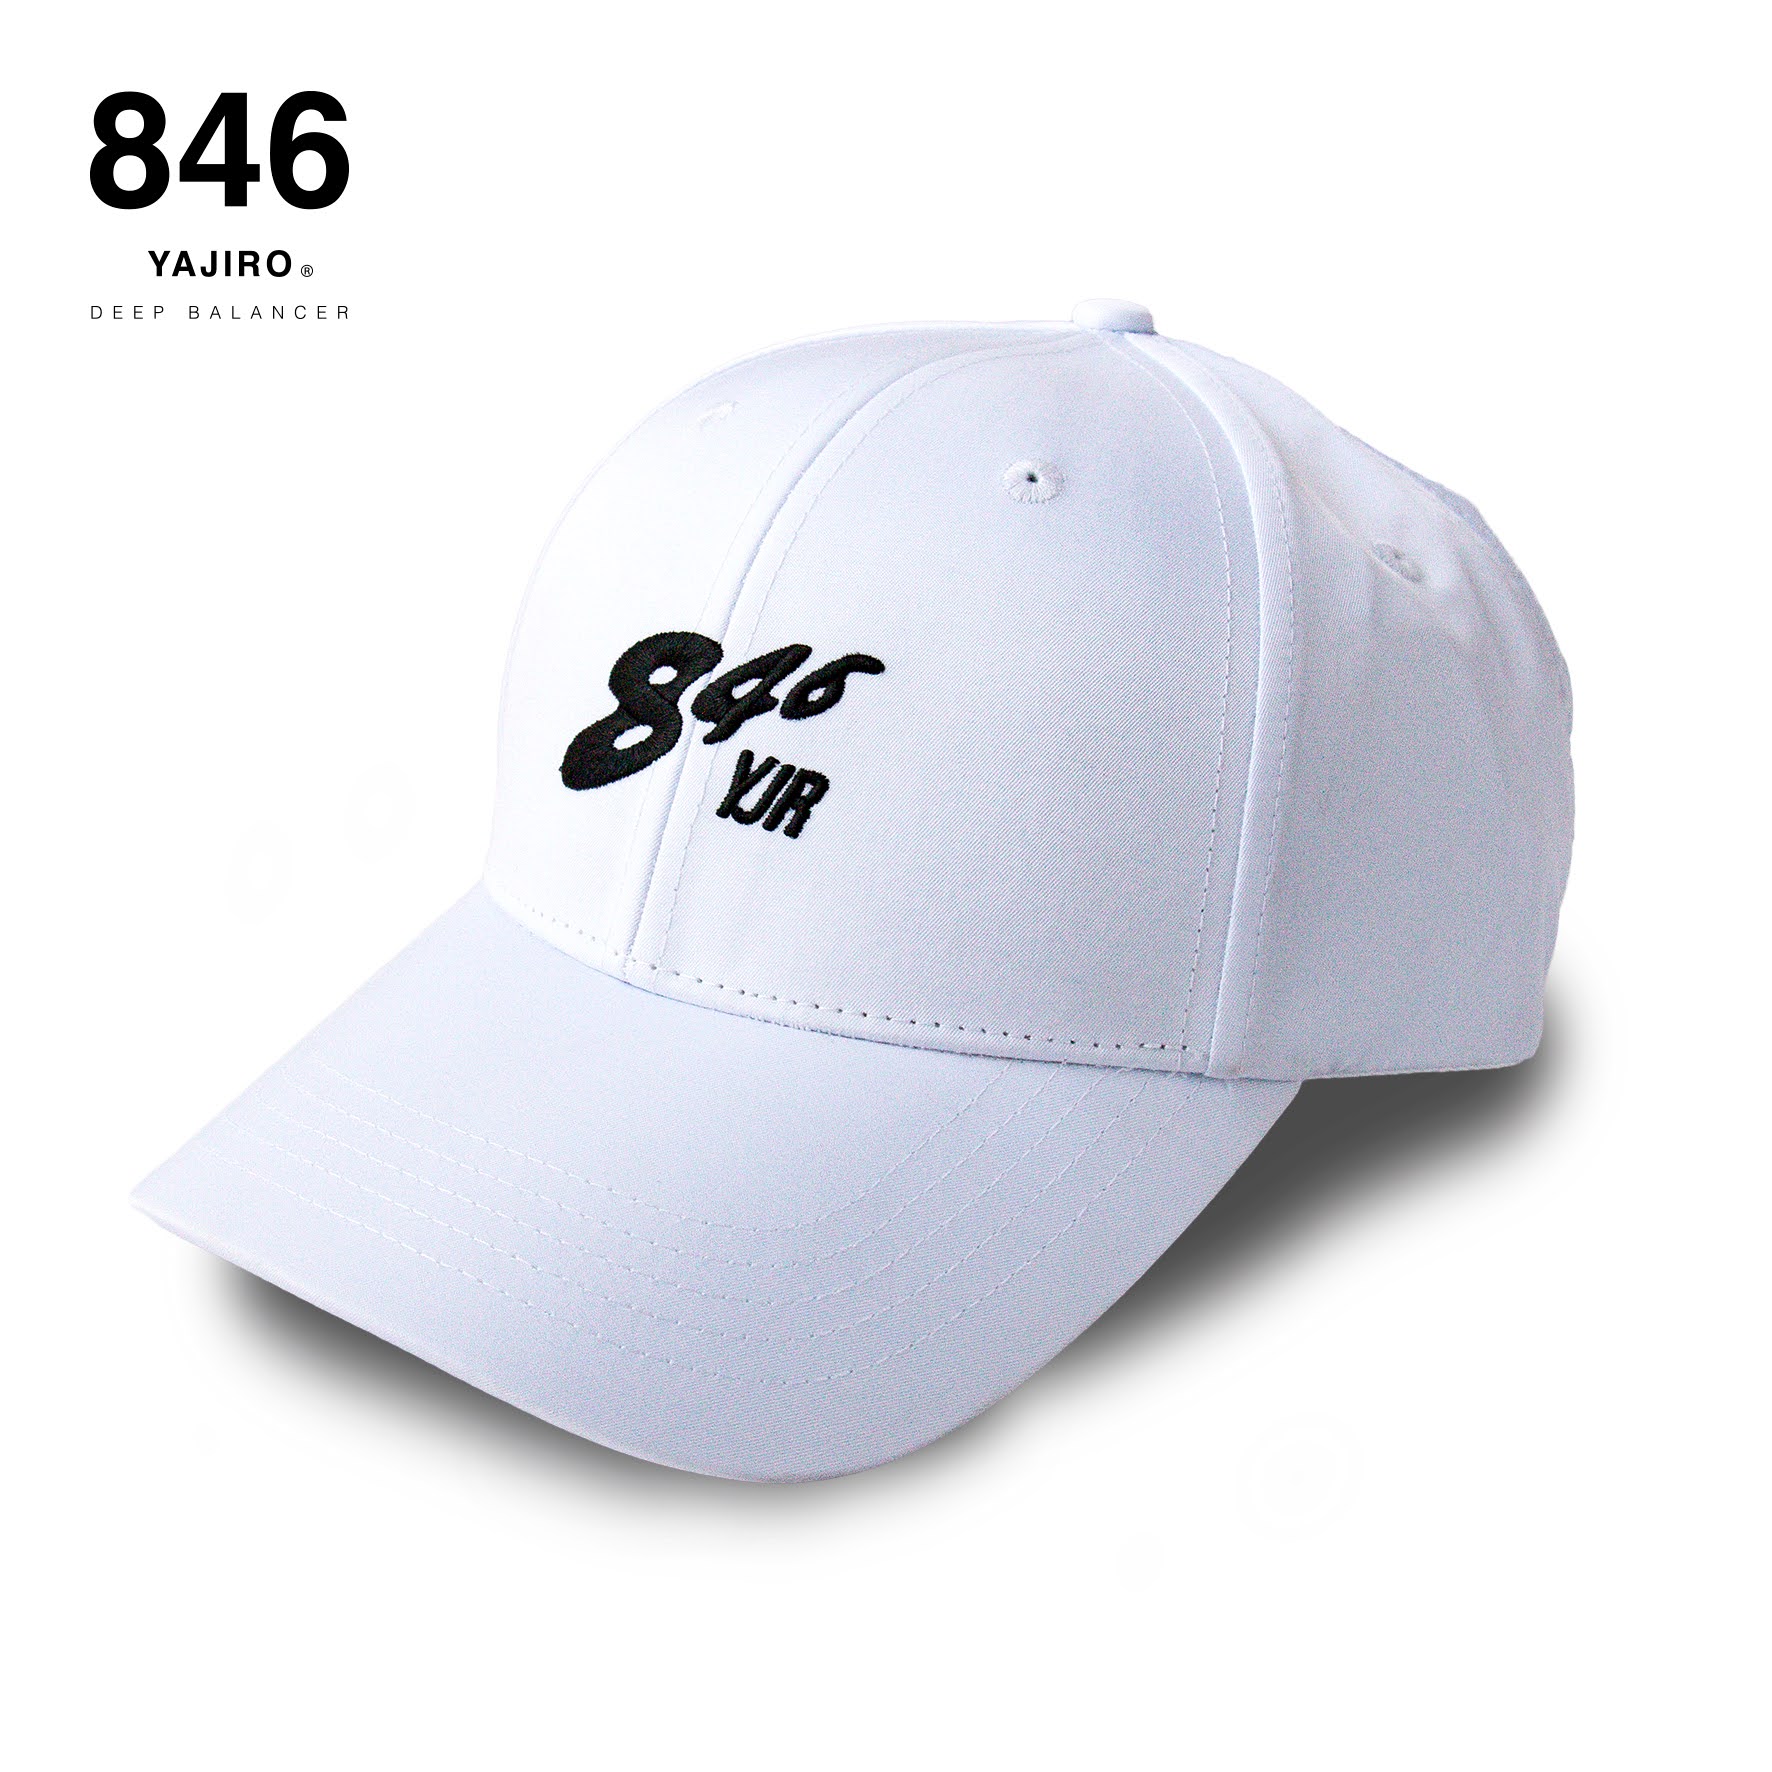 846YAJIRO CAP【FLASH】WHITE ローキャップ ゴルフキャップ スポーツ メンズ レディース アパレル おしゃれ 帽子 ユニセックス サイズ調整 846